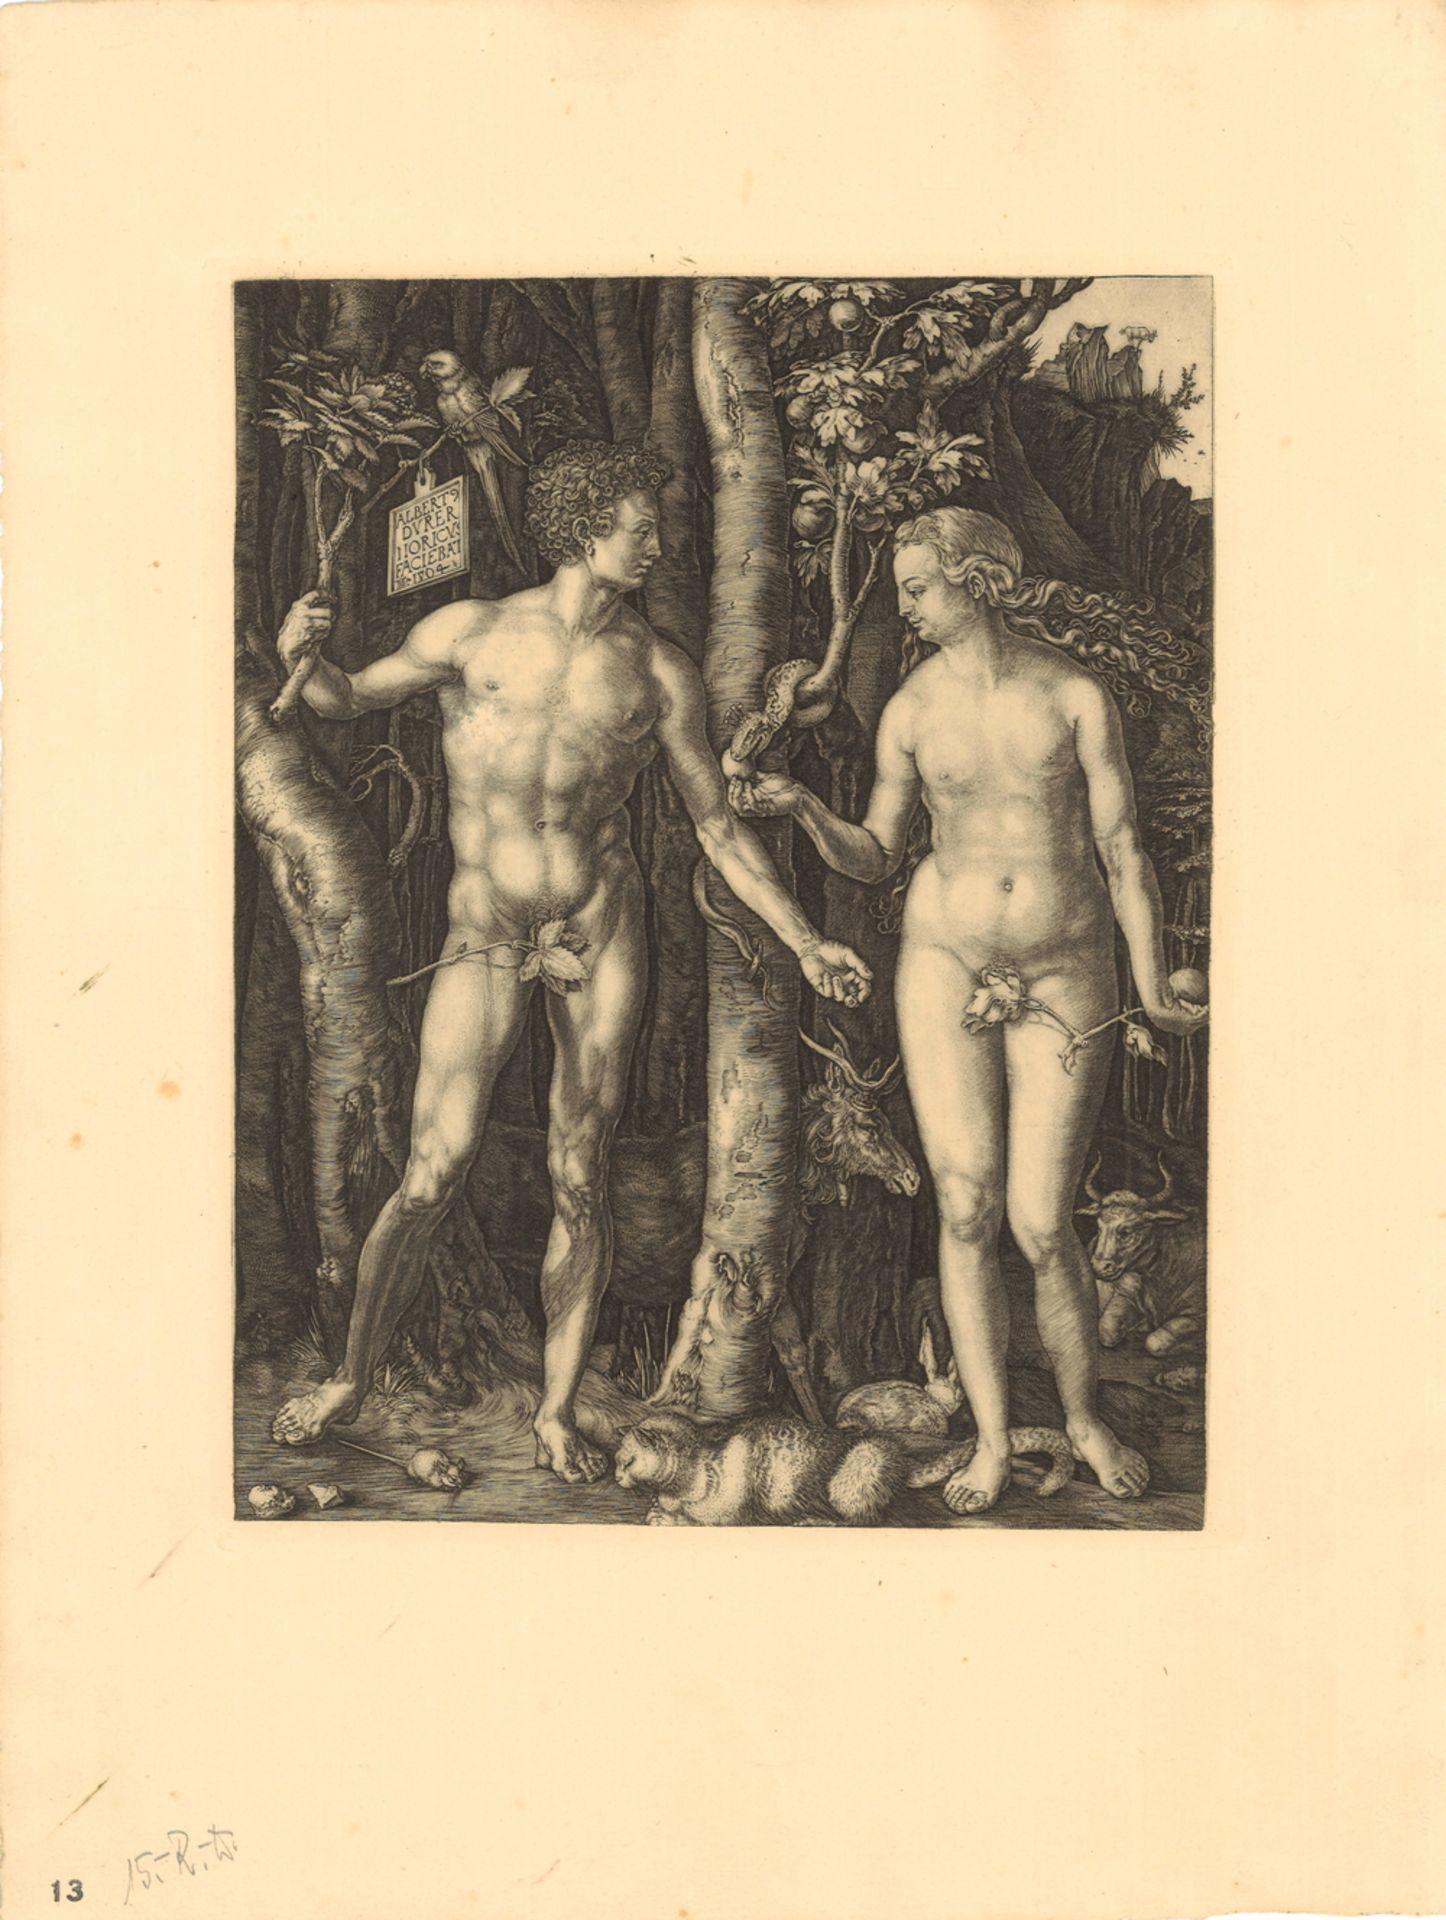 Druck-Grafik "Adam und Eva" Hieronymus Wierix (1553 - 1619) nach Albrecht Dürer, Maße: Breite ca. 29